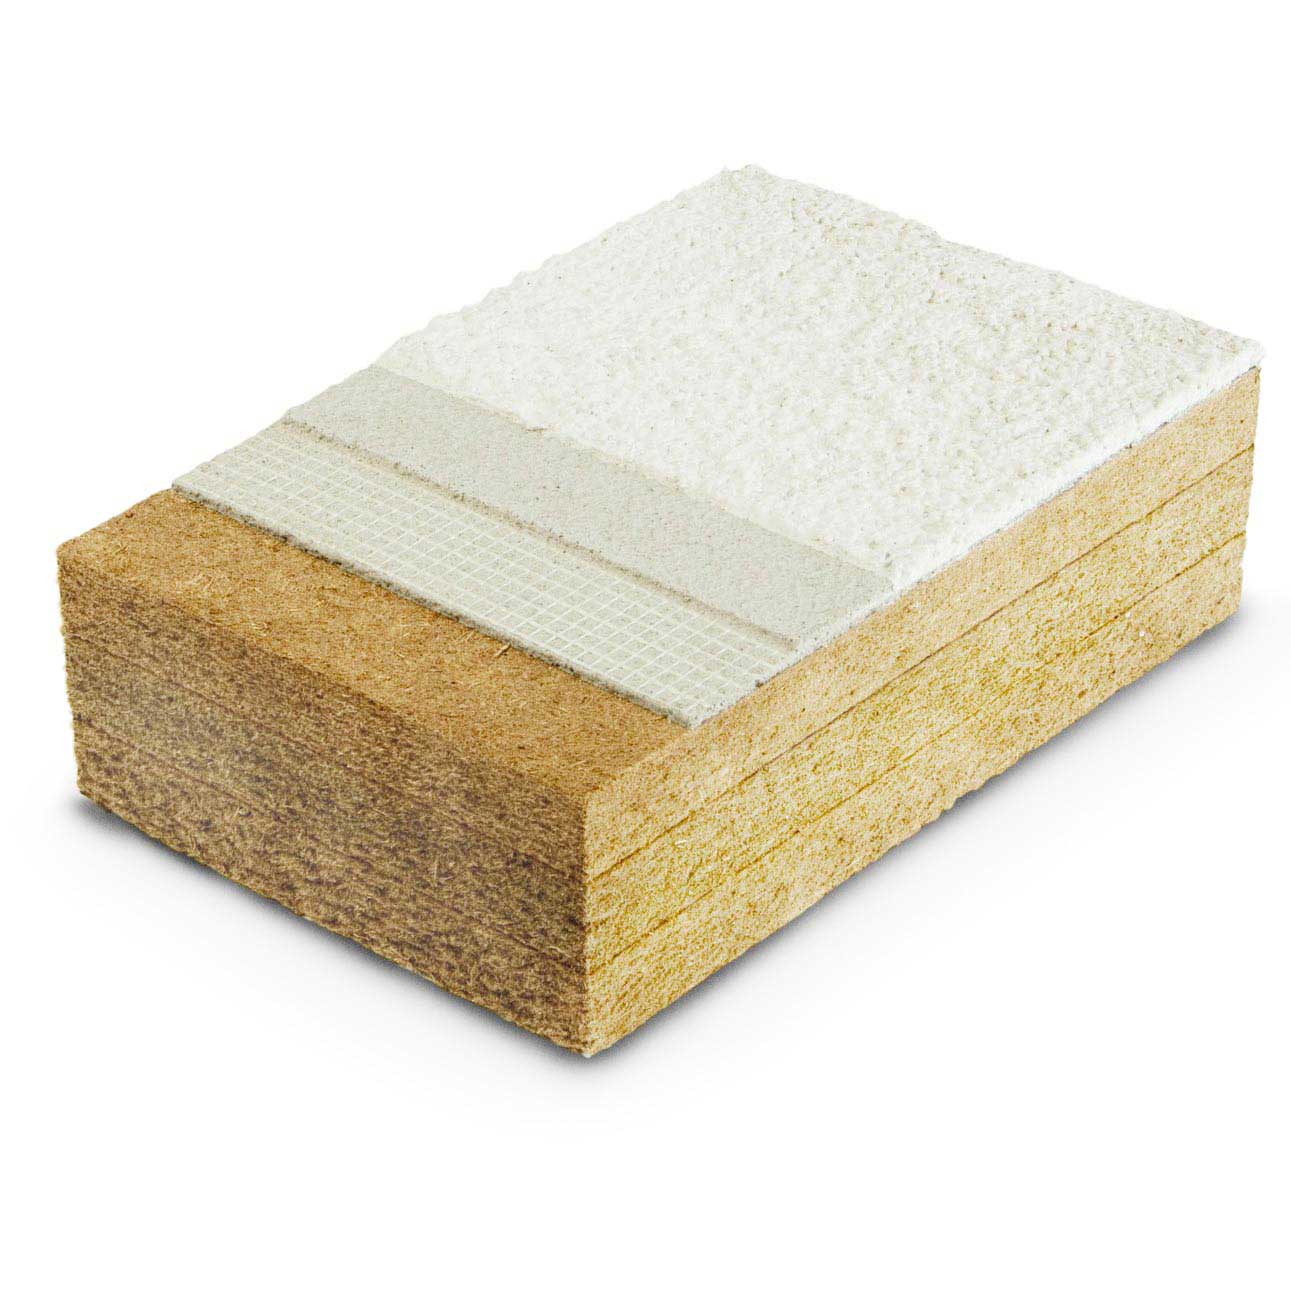 Wood fiber Protect dry densities 110, 140, 180kg/m³